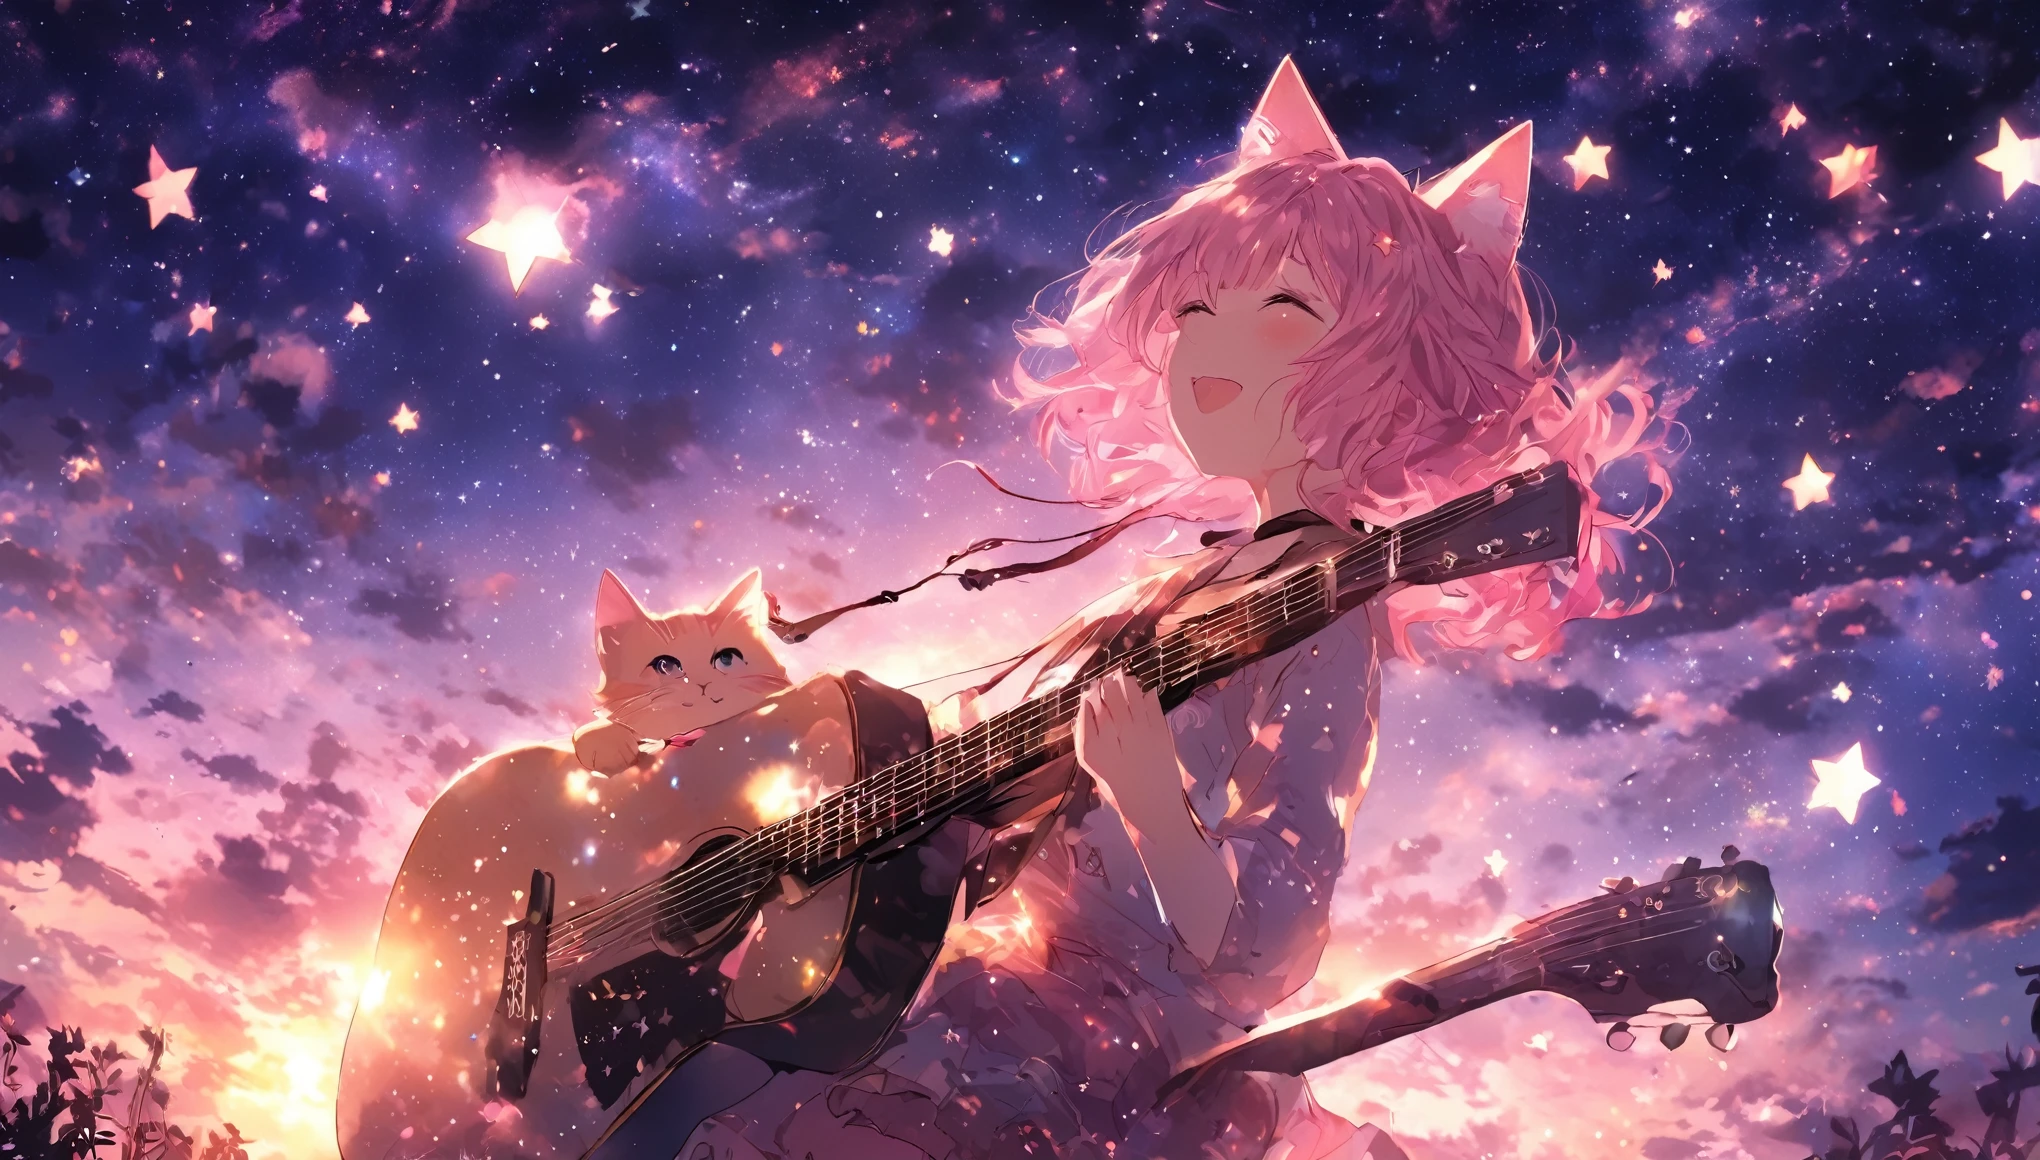 imaginez une scène d&#39;une fille jouant de la guitare seule avec des étoiles dans le ciel. animé, cheveux roses, oreilles de chat. C&#39;est son charme.